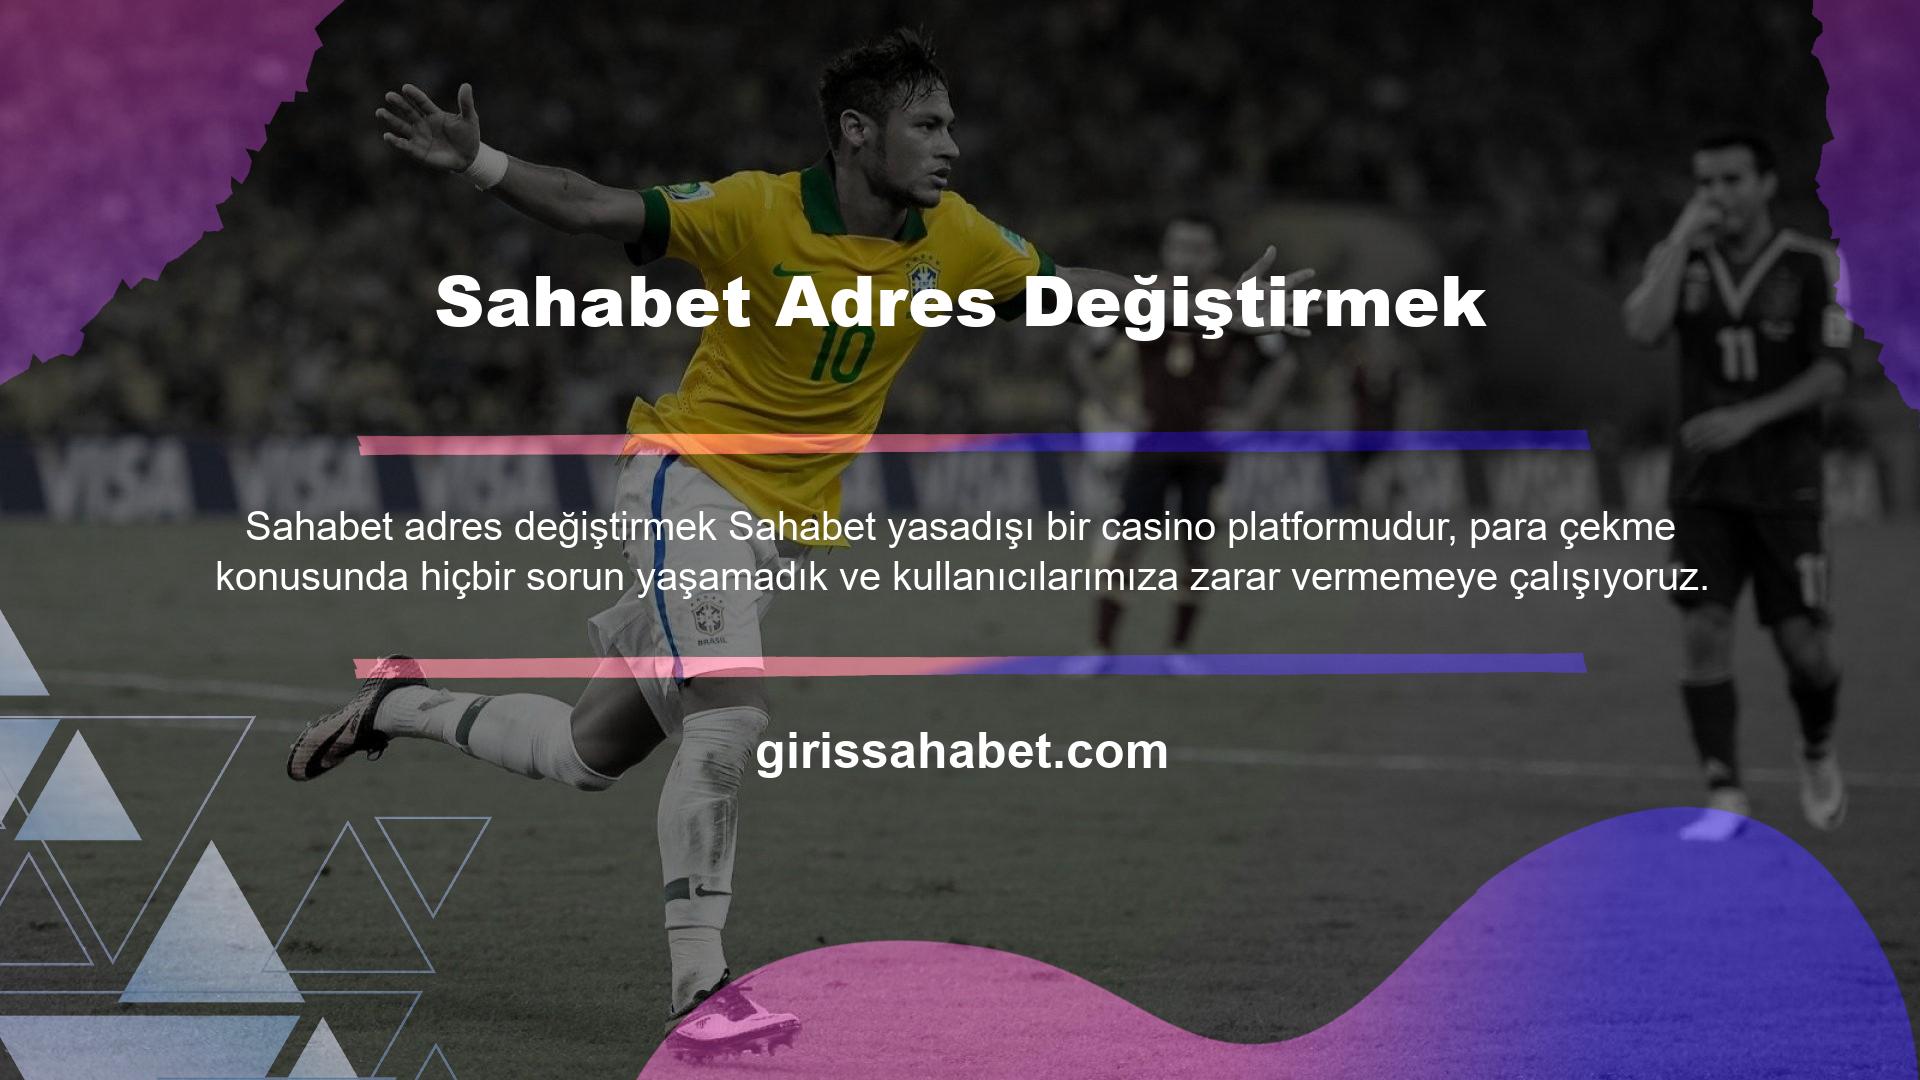 Sahabet adres değişikliği Sahabet, özellikle Türkiye'de güvenilir siteler bulmak ne kadar zor olursa olsun, kullanıcıların kolaylıkla para çekebilecekleri bir platform olarak tanıtılmaktadır